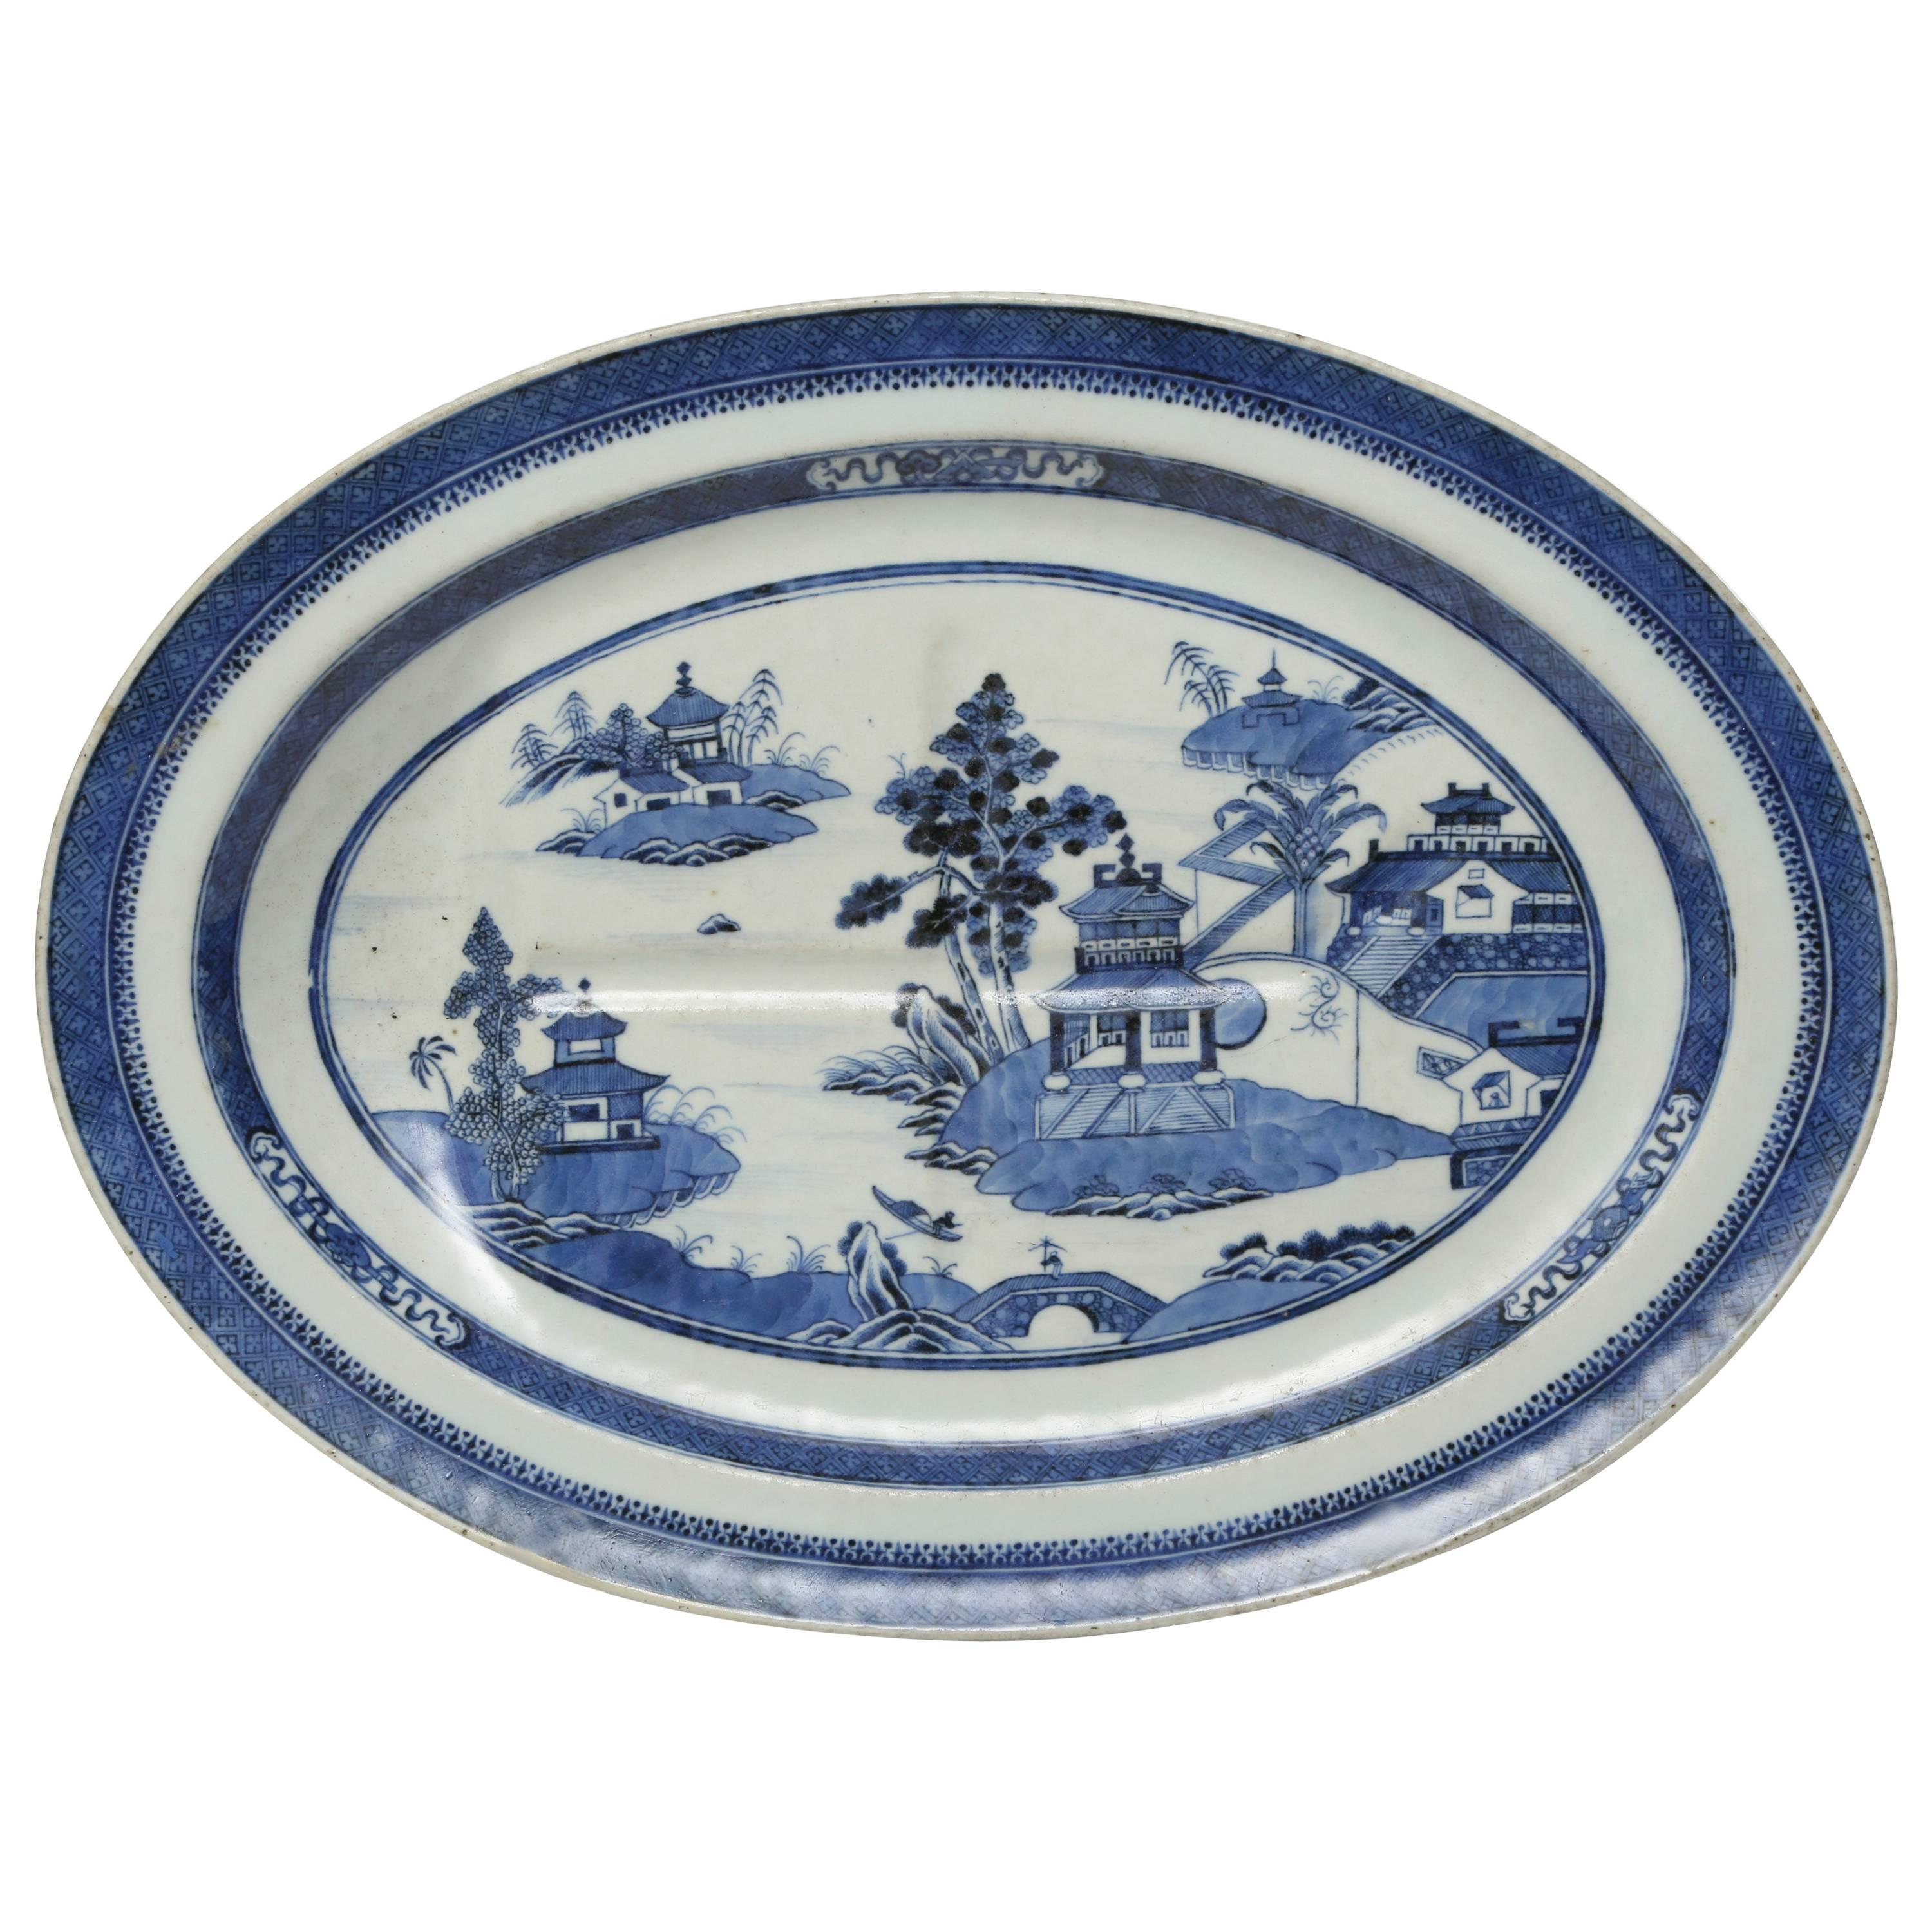  Ovaler Porzellan- Brunnen- und Baumteller im Nanking-Muster, Chinesischer Export